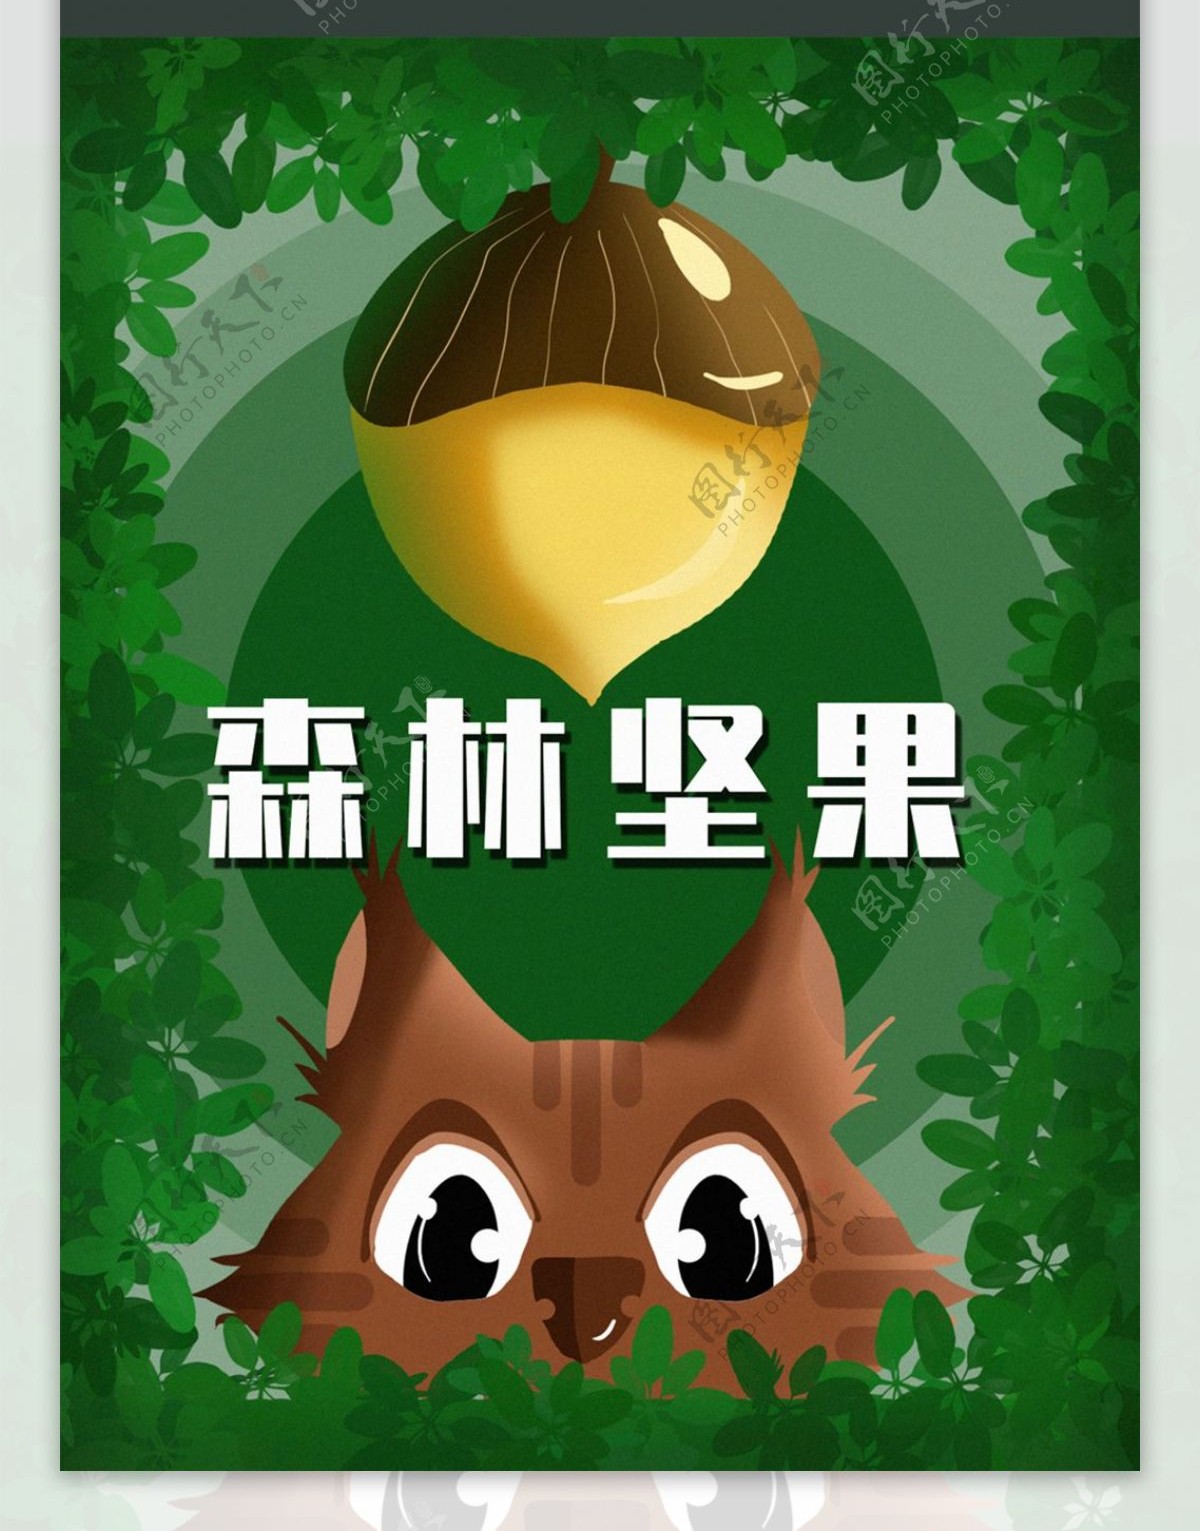 森林坚果之爱吃坚果的松鼠原创零食包装插画